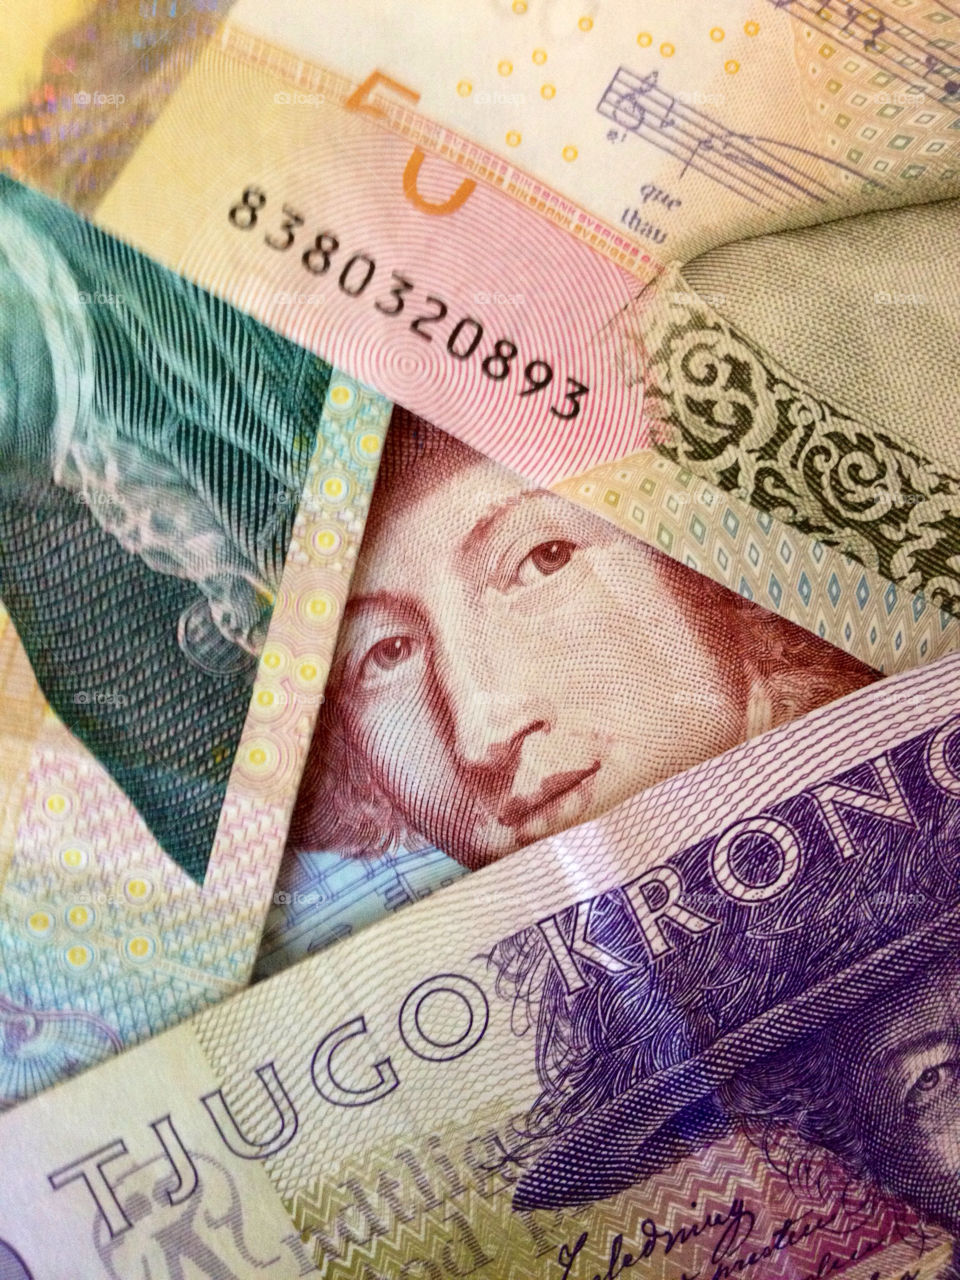 sweden västerås money notes by nesty